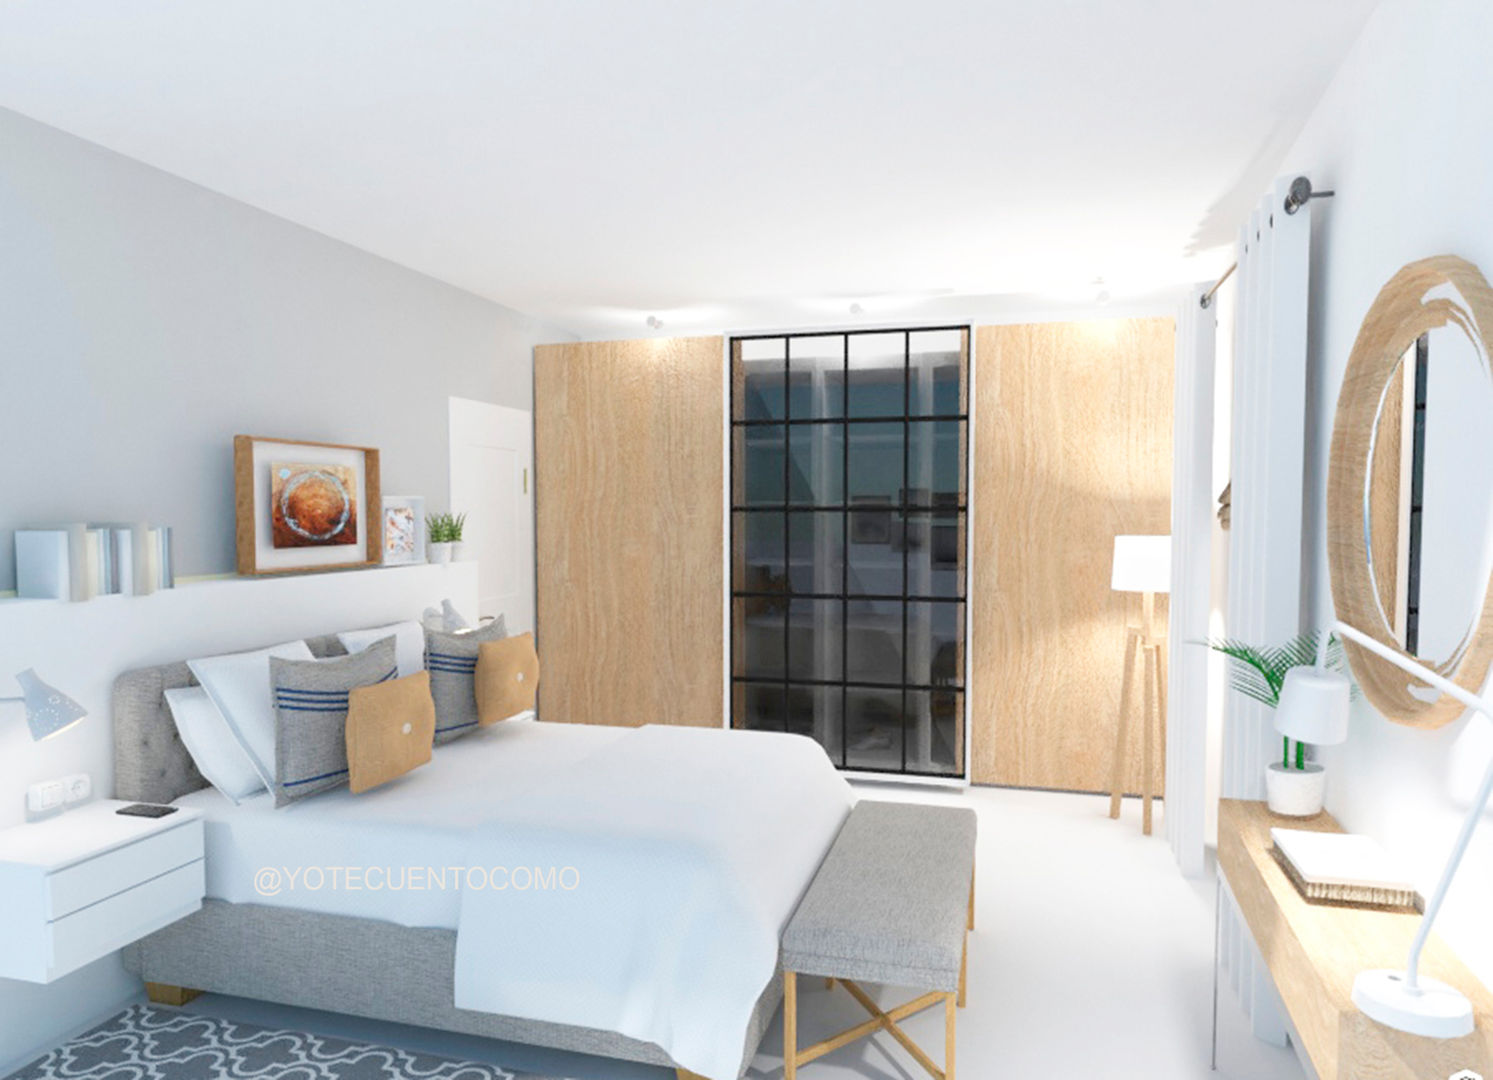 Dormitorio - Proyecto interiorismo ONLINE, YO TE CUENTO COMO YO TE CUENTO COMO Scandinavische slaapkamers